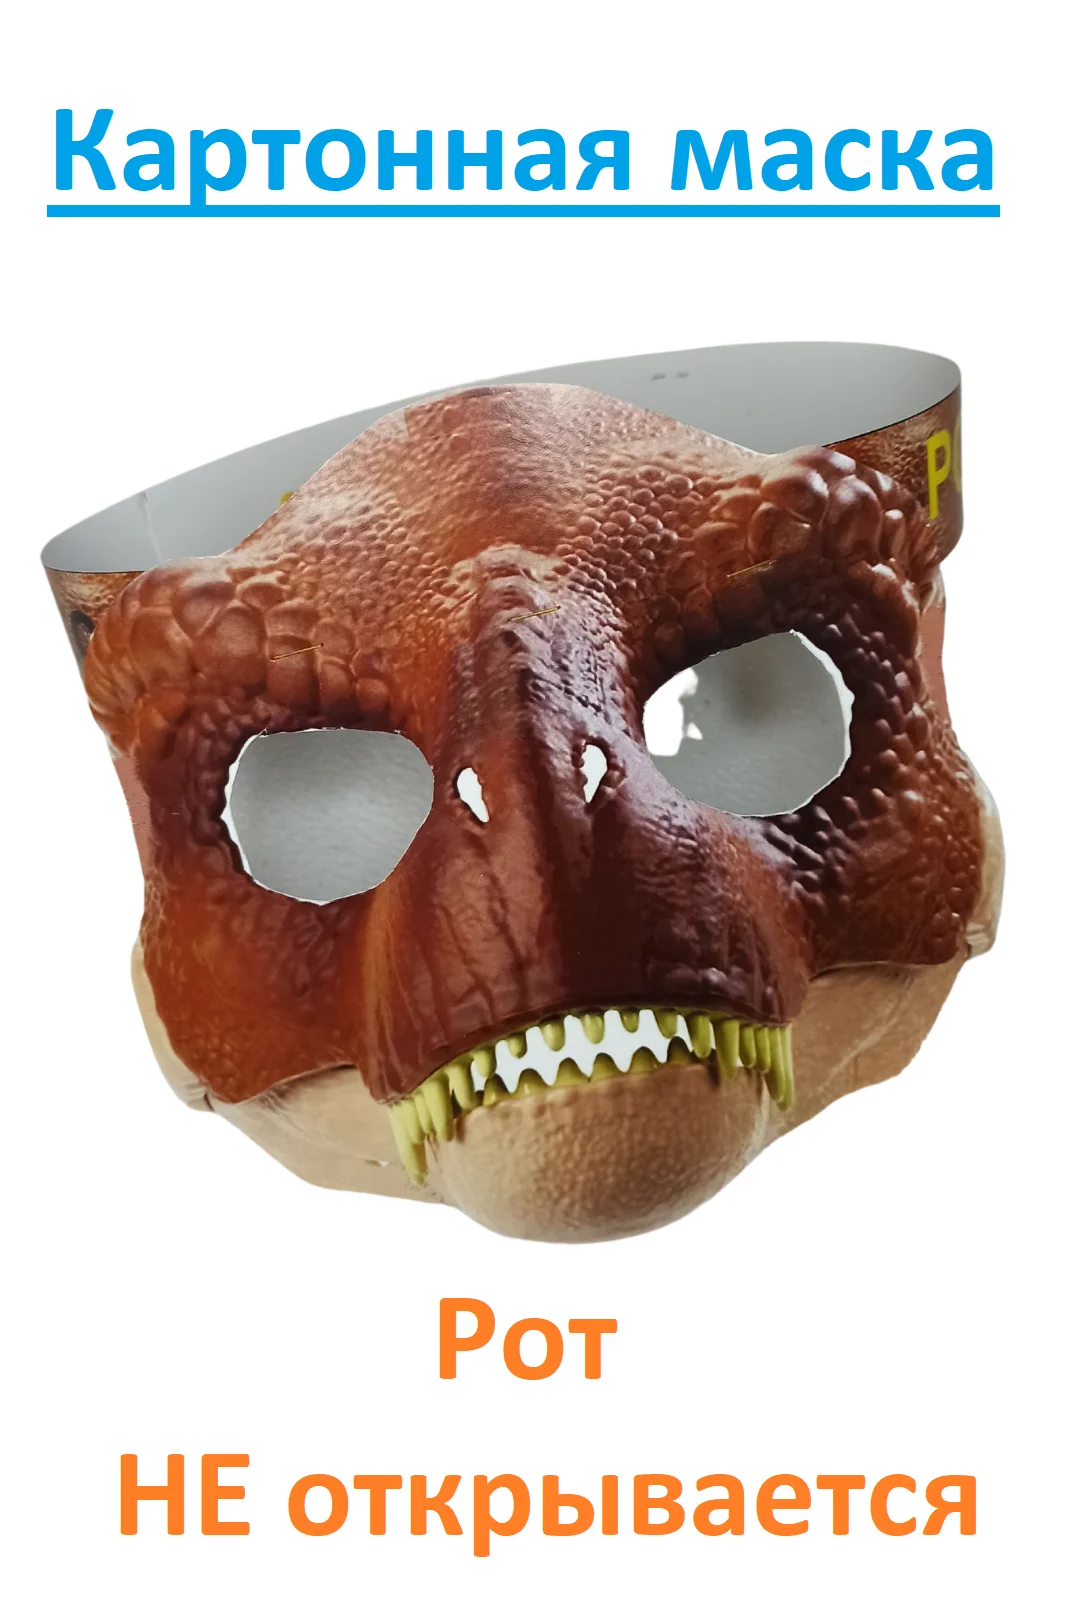 Tu boca no se abre. Mascarilla de cartón de cabeza marrón, juguete Raptor  Furi, dinosaurio jurásico, peludo, Ko, 1 unidad| | - AliExpress